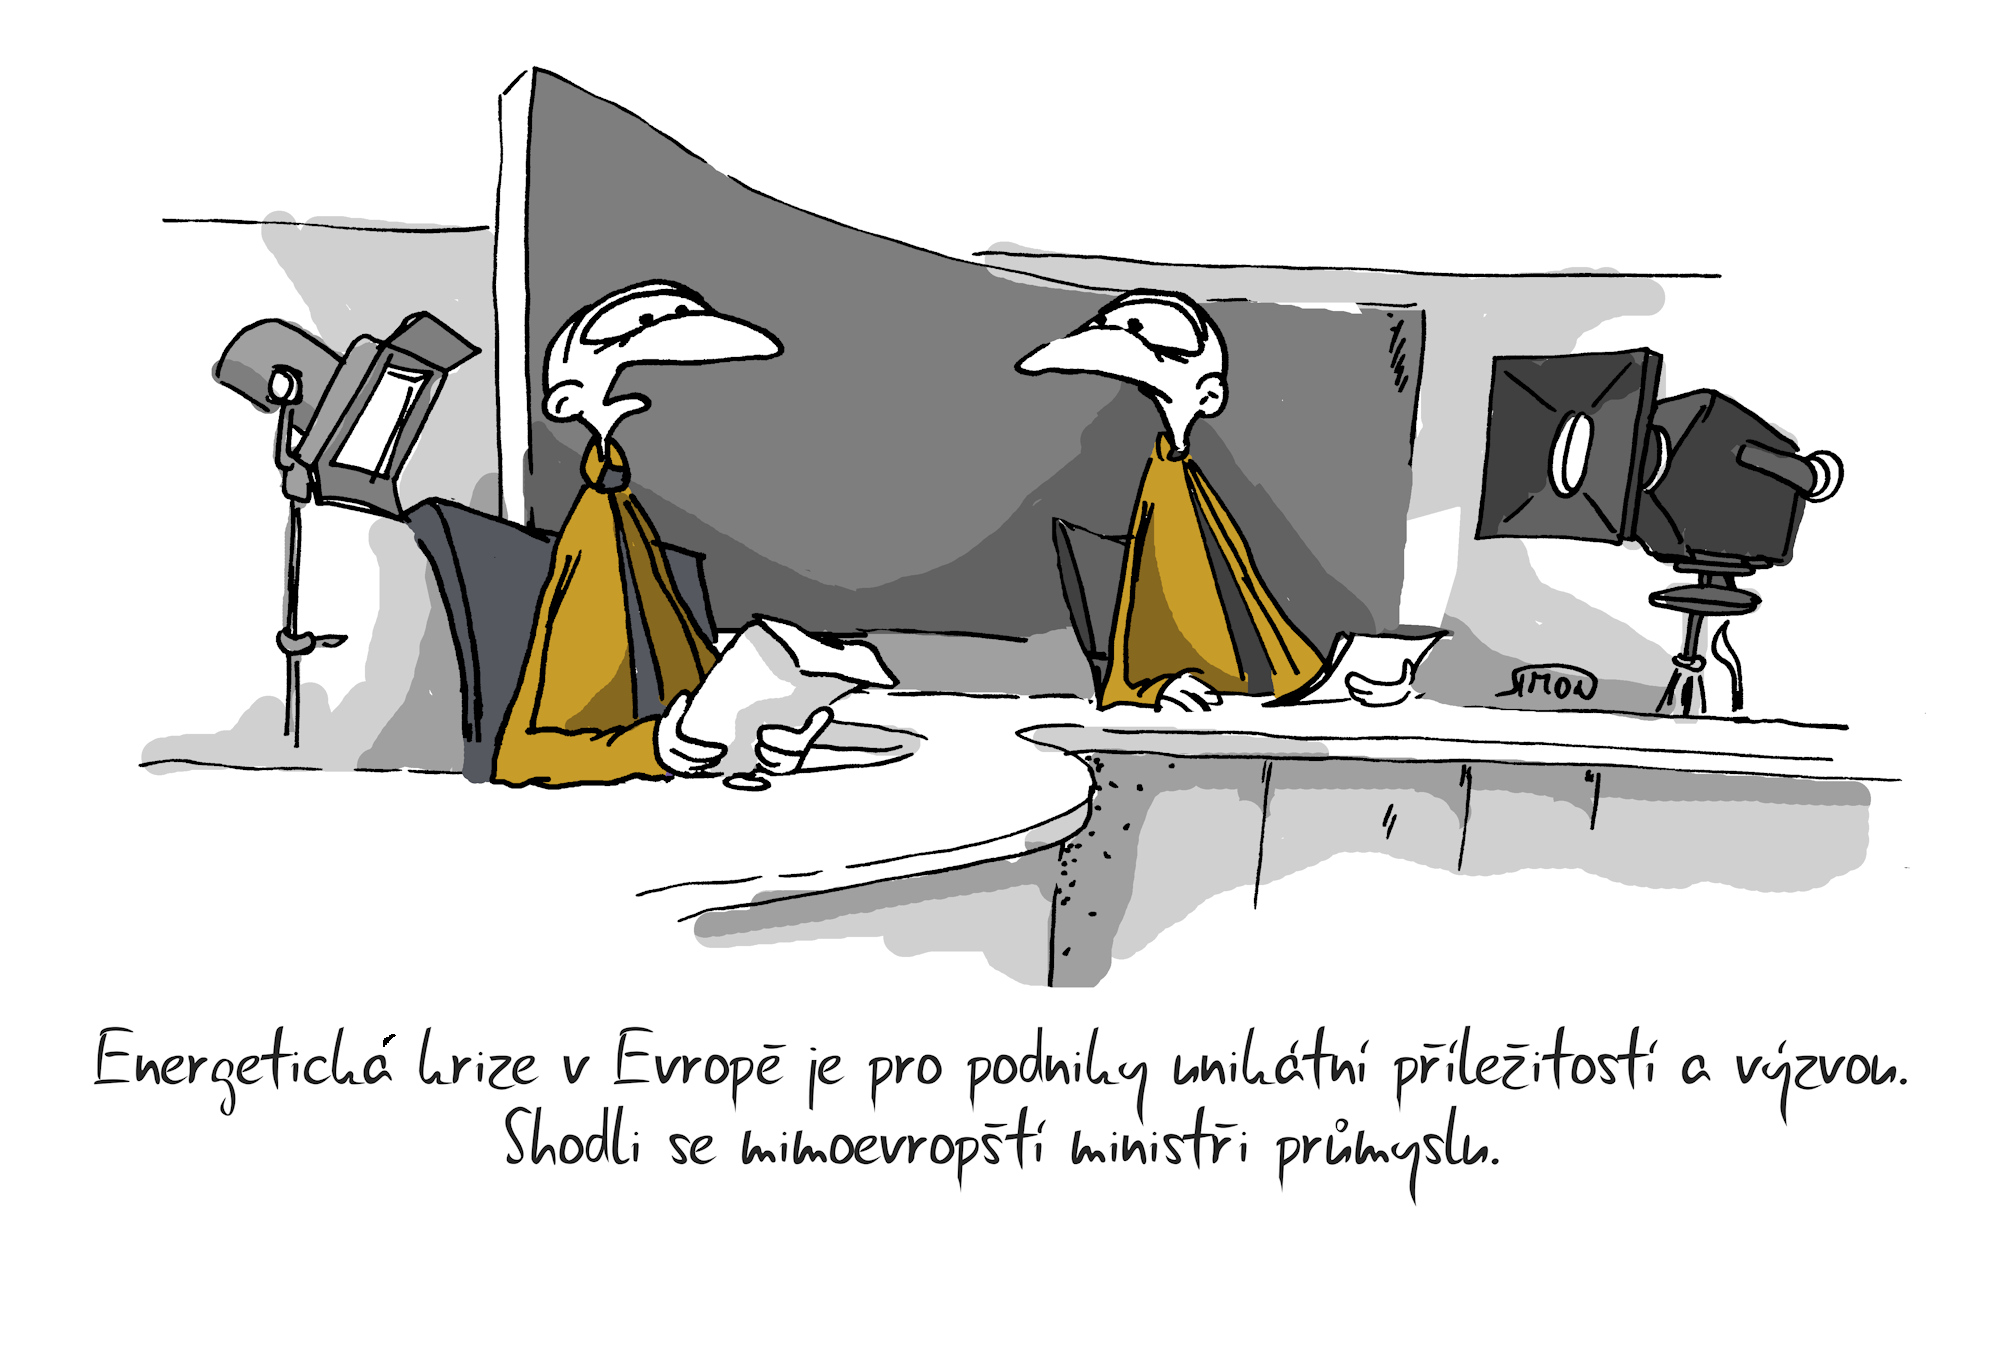 Kreslený vtip: Energetická krize v Evropě je pro podniky unikátní příležitostí a výzvou.